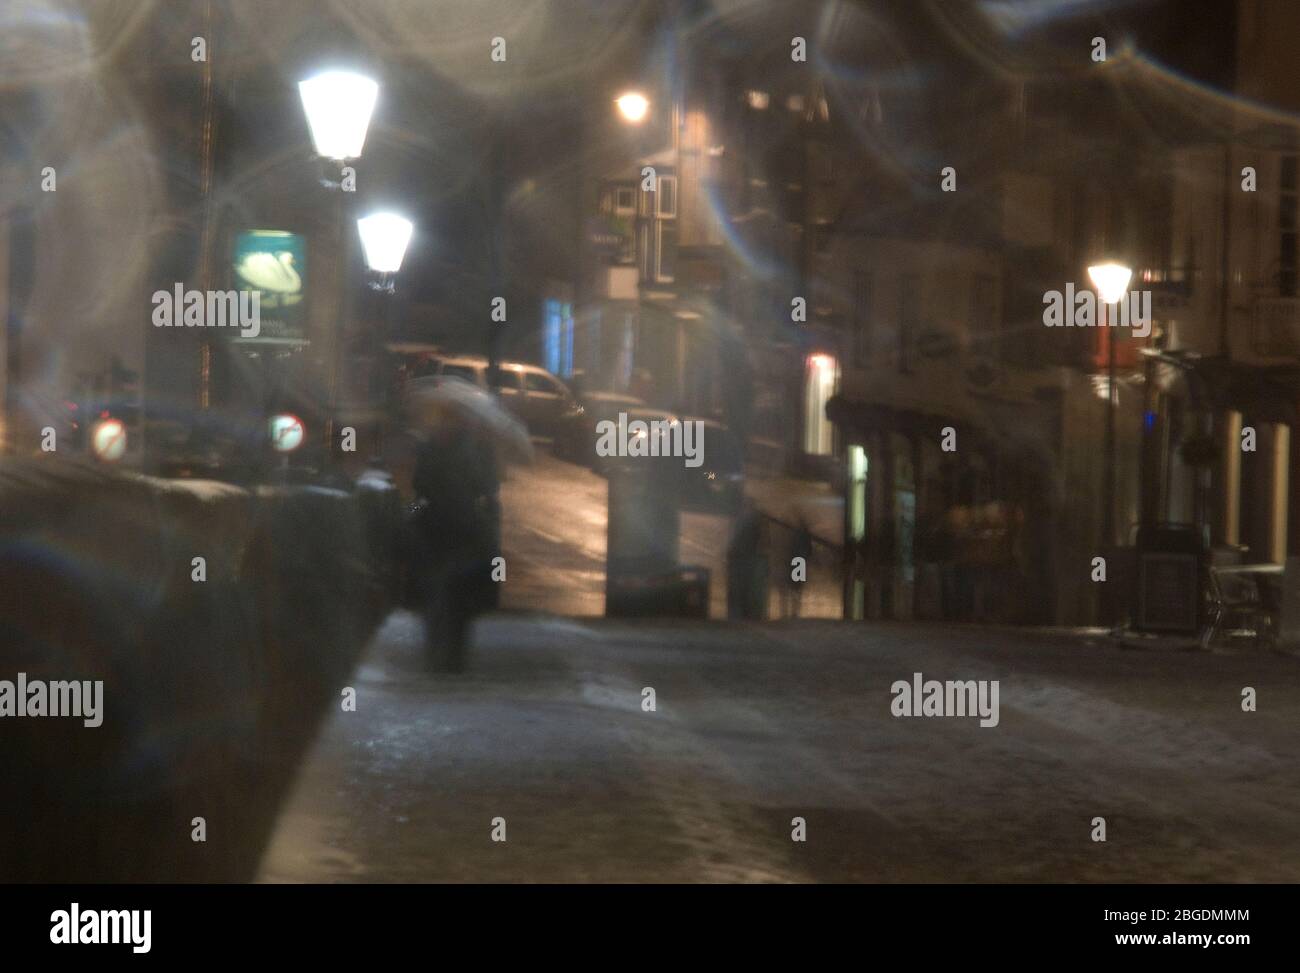 Ein stimmungsvolles Bild von Menschen, die nachts in einer Fußgängerzone in starkem Regen gefangen sind, und Straßenlaternen, die ein unheimliches Leuchten bringen Stockfoto